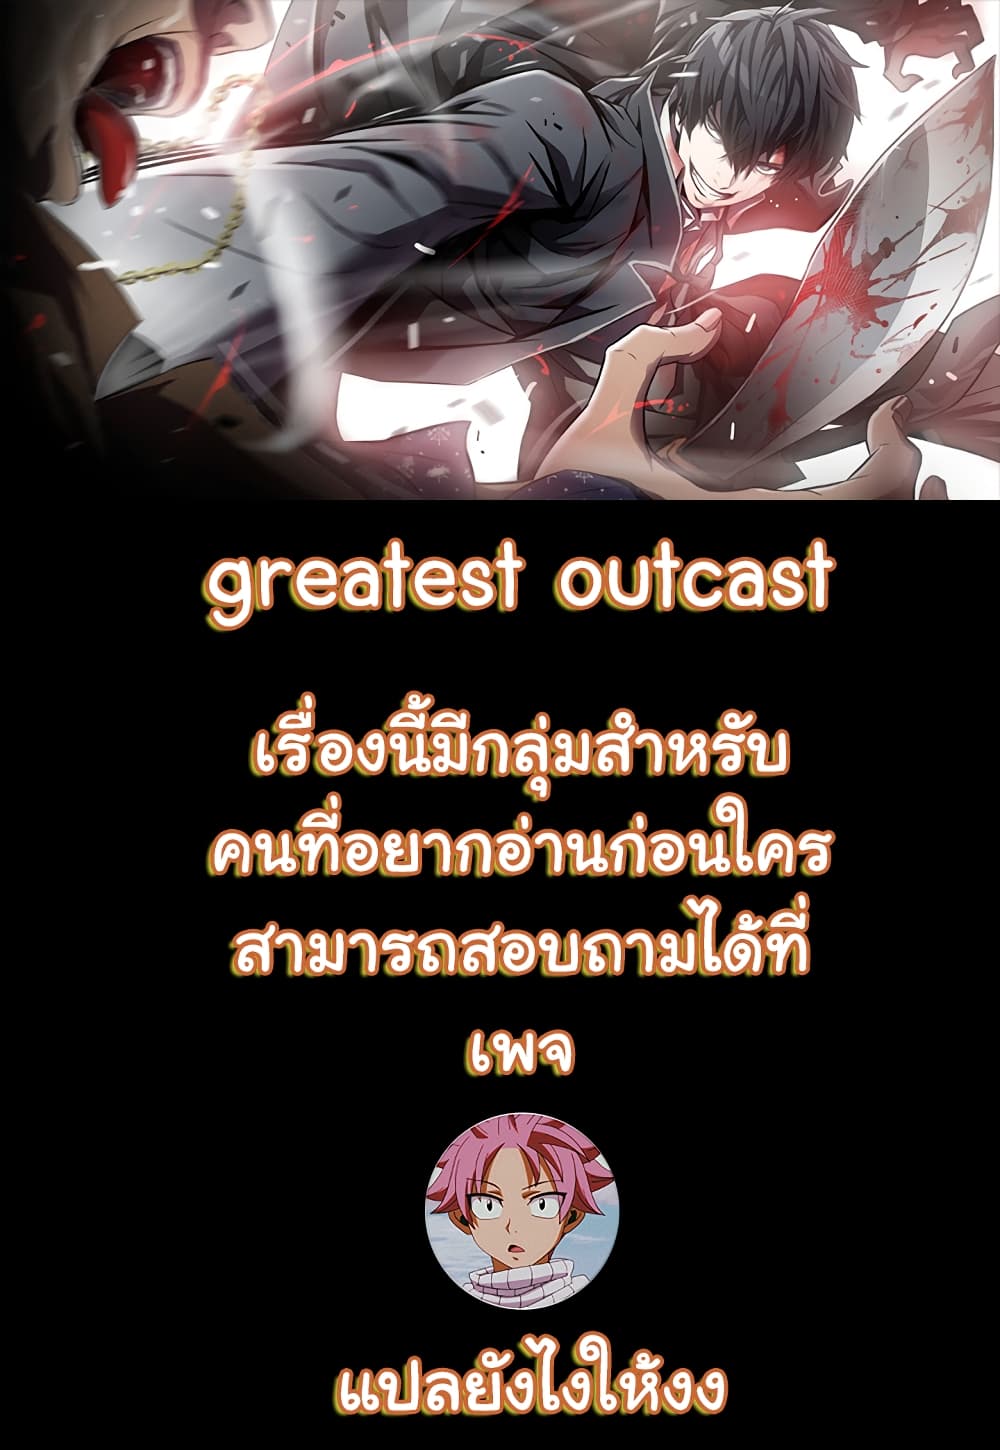 Greatest Outcast 2 (1)